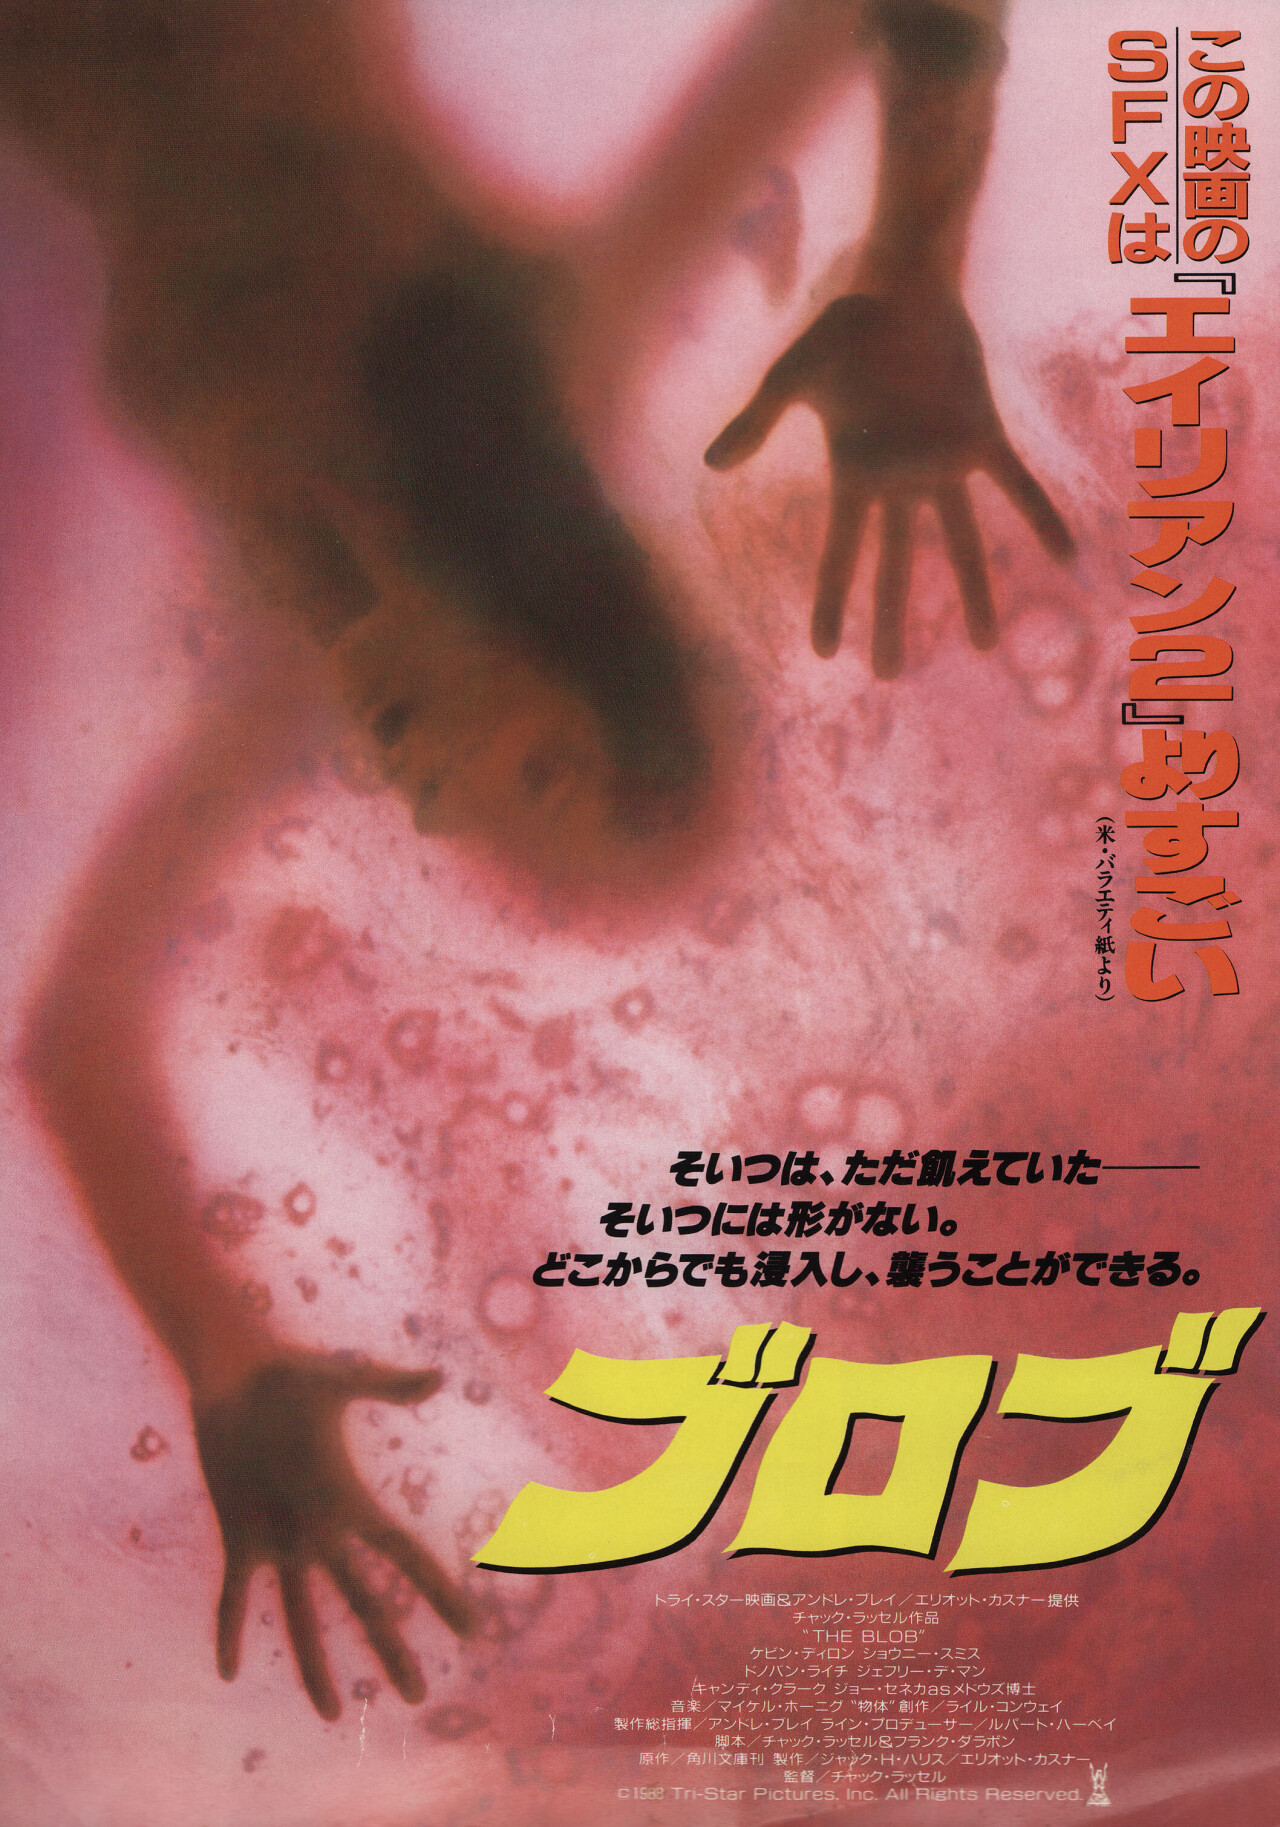 Капля (The Blob, 1988), режиссёр Чак Рассел, японский постер к фильму (ужасы, 1988 год)